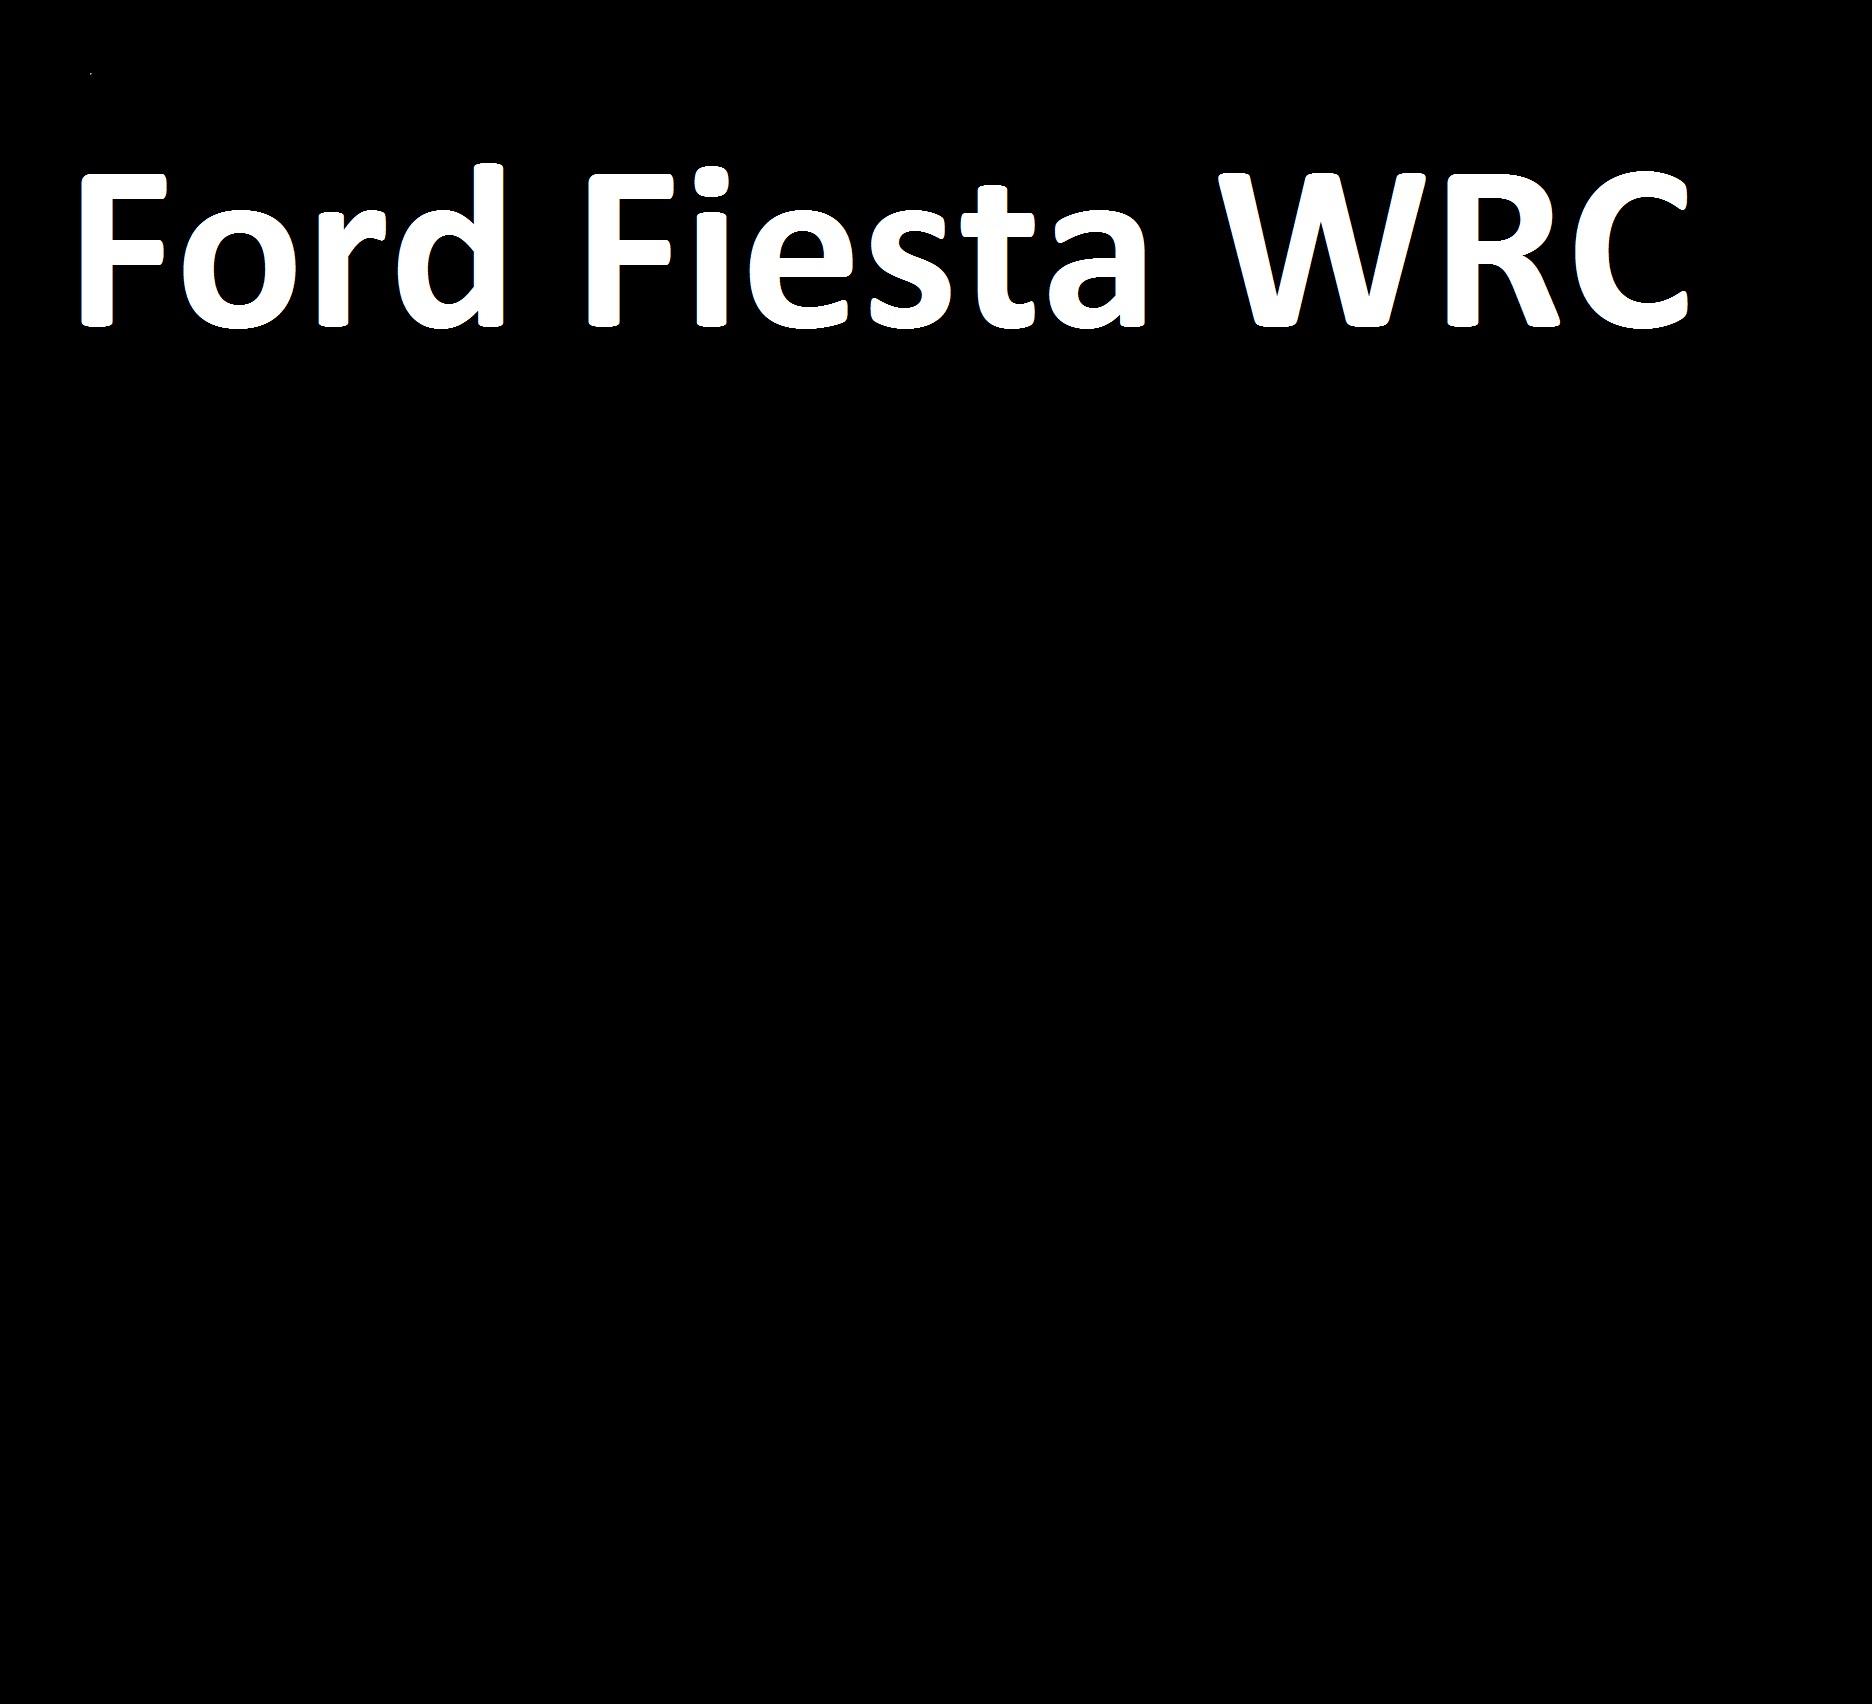 afbeelding van ford fiesta WRC ailes avant, WRC ailes, ford fiesta WRC pares choc, WRC pares choc, ford fiesta WRC bas de caisse, WRC bas de caisse, bouclier WRC, bouclier ford fiesta WRC, WRC bouclier,ford fiesta WRC body kit, ford fiesta WRC wide body, WRC wide body, WCR body kit